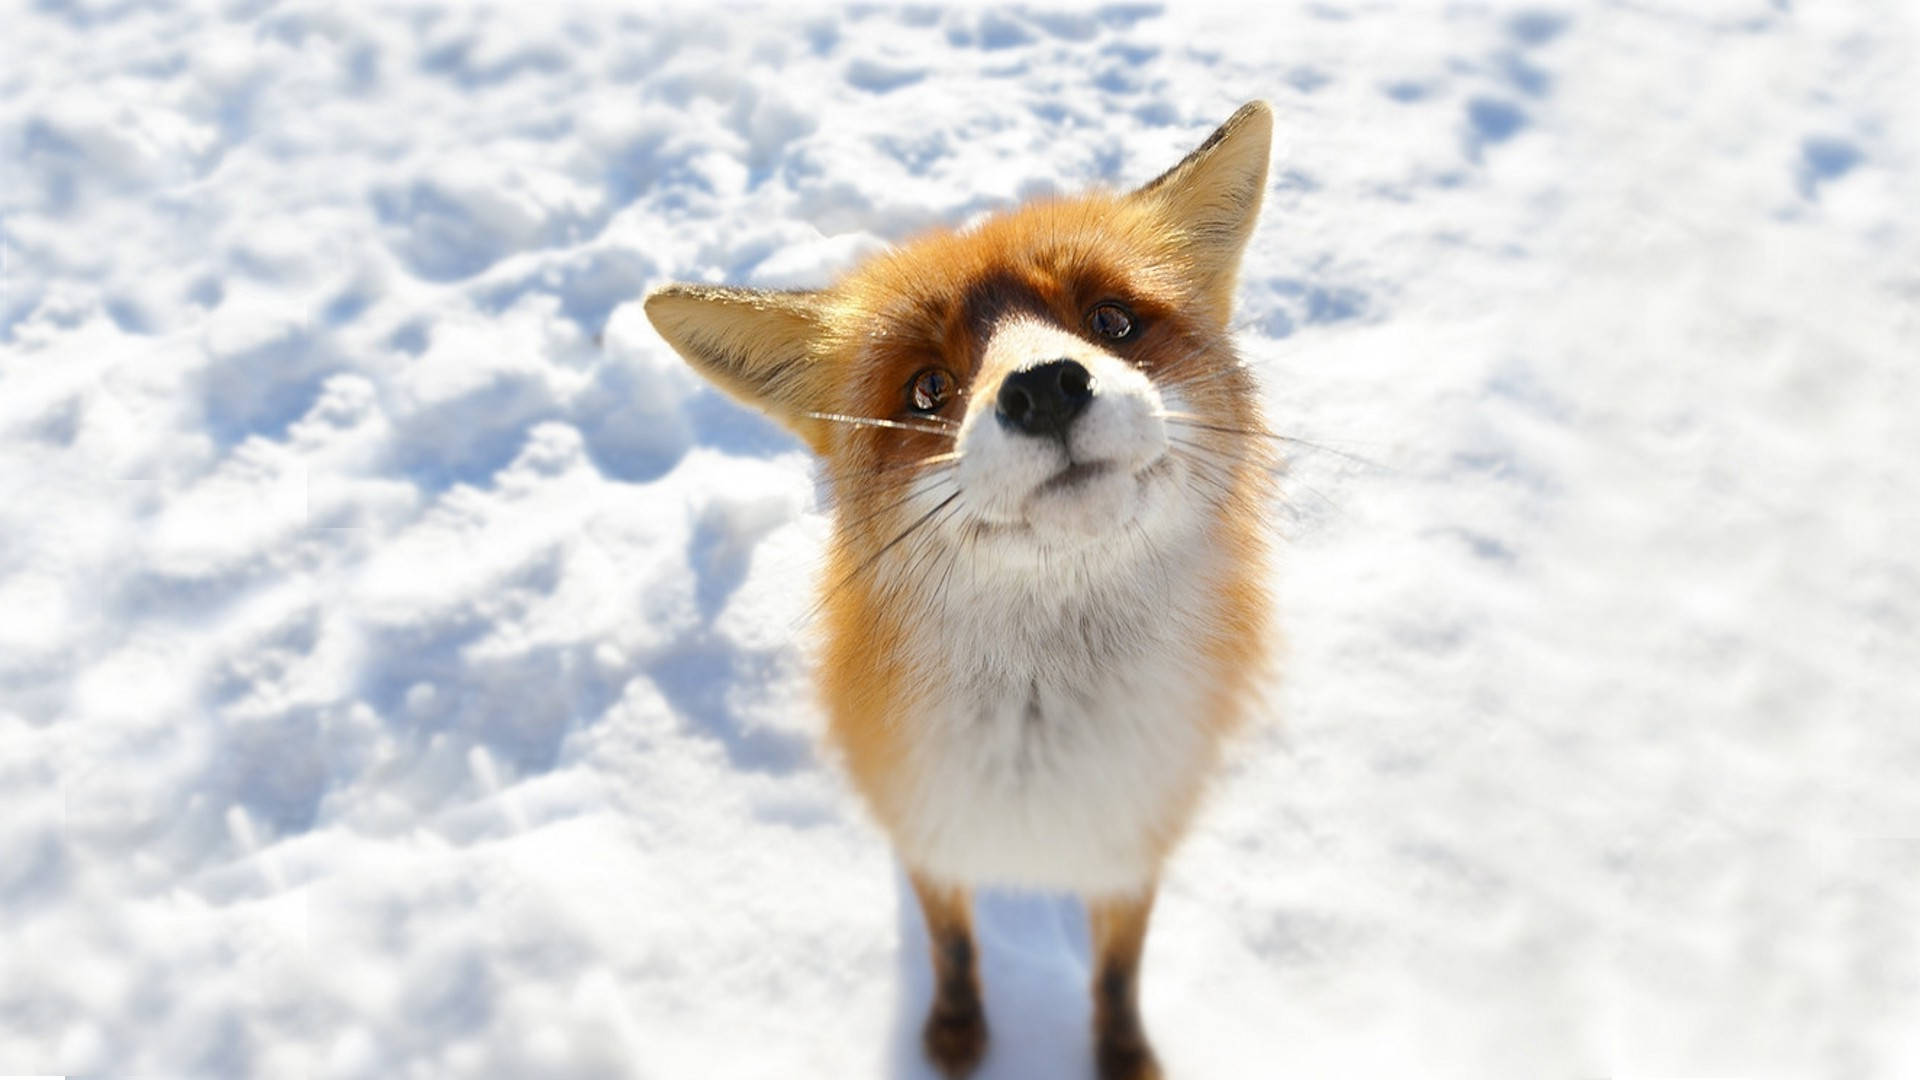 Adorable Arctic Fox in its Natural Habitat Wallpaper